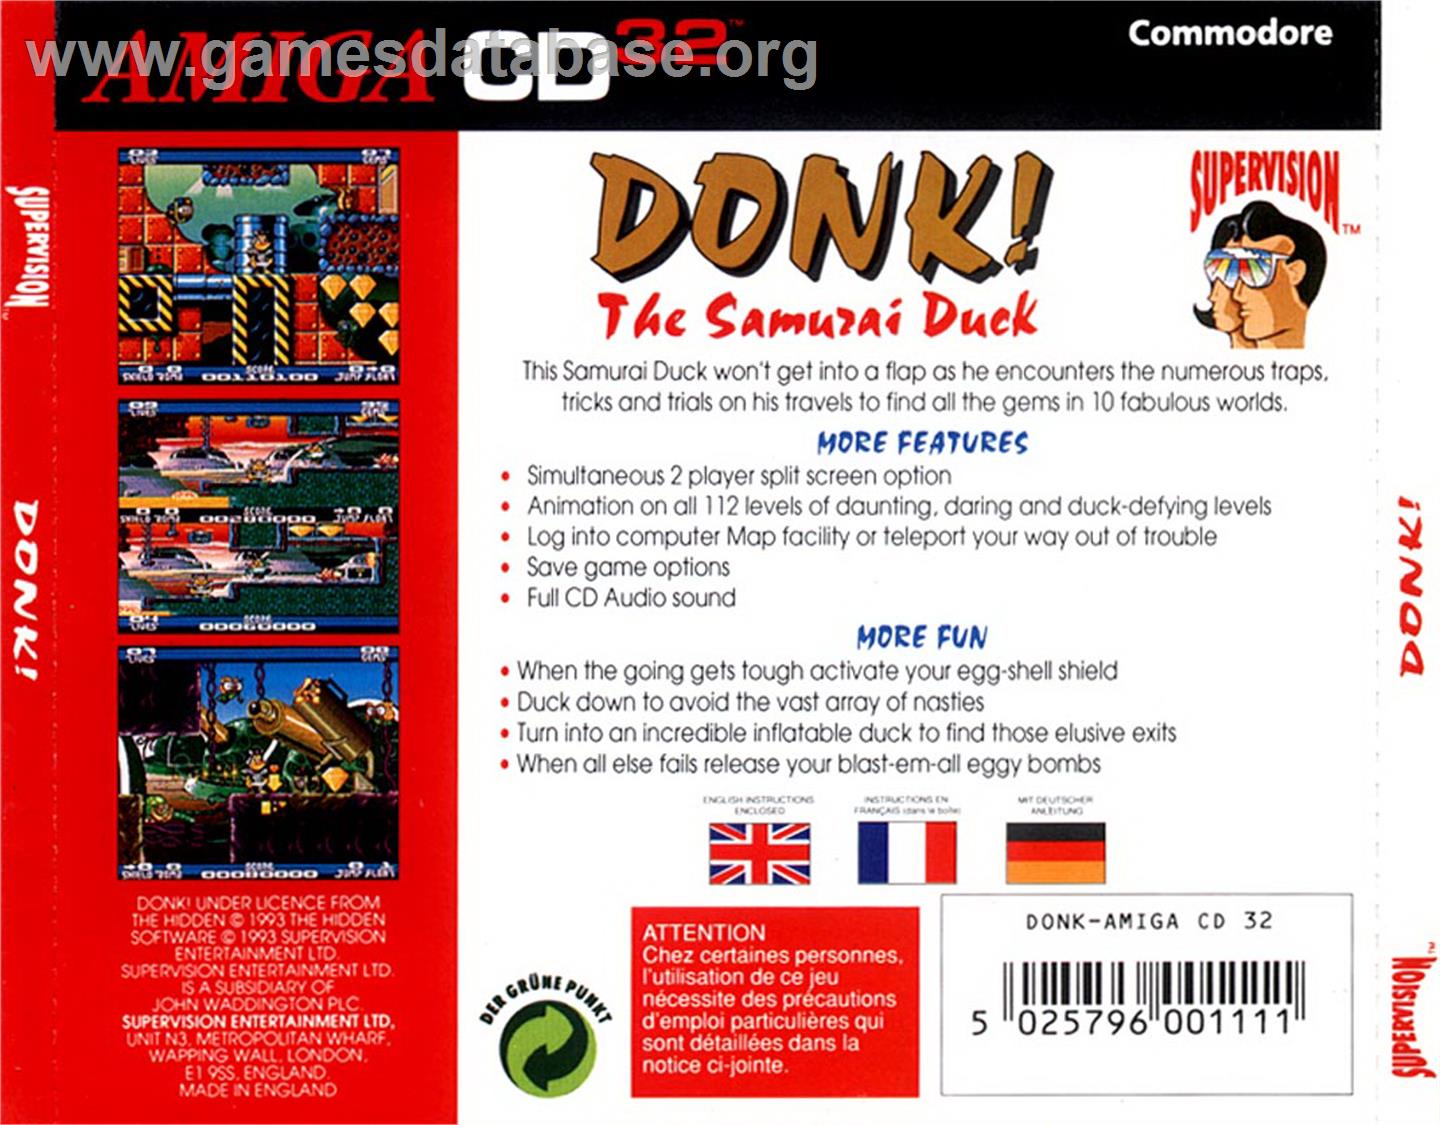 Donk!: The Samurai Duck - Commodore Amiga CD32 - Artwork - Box Back